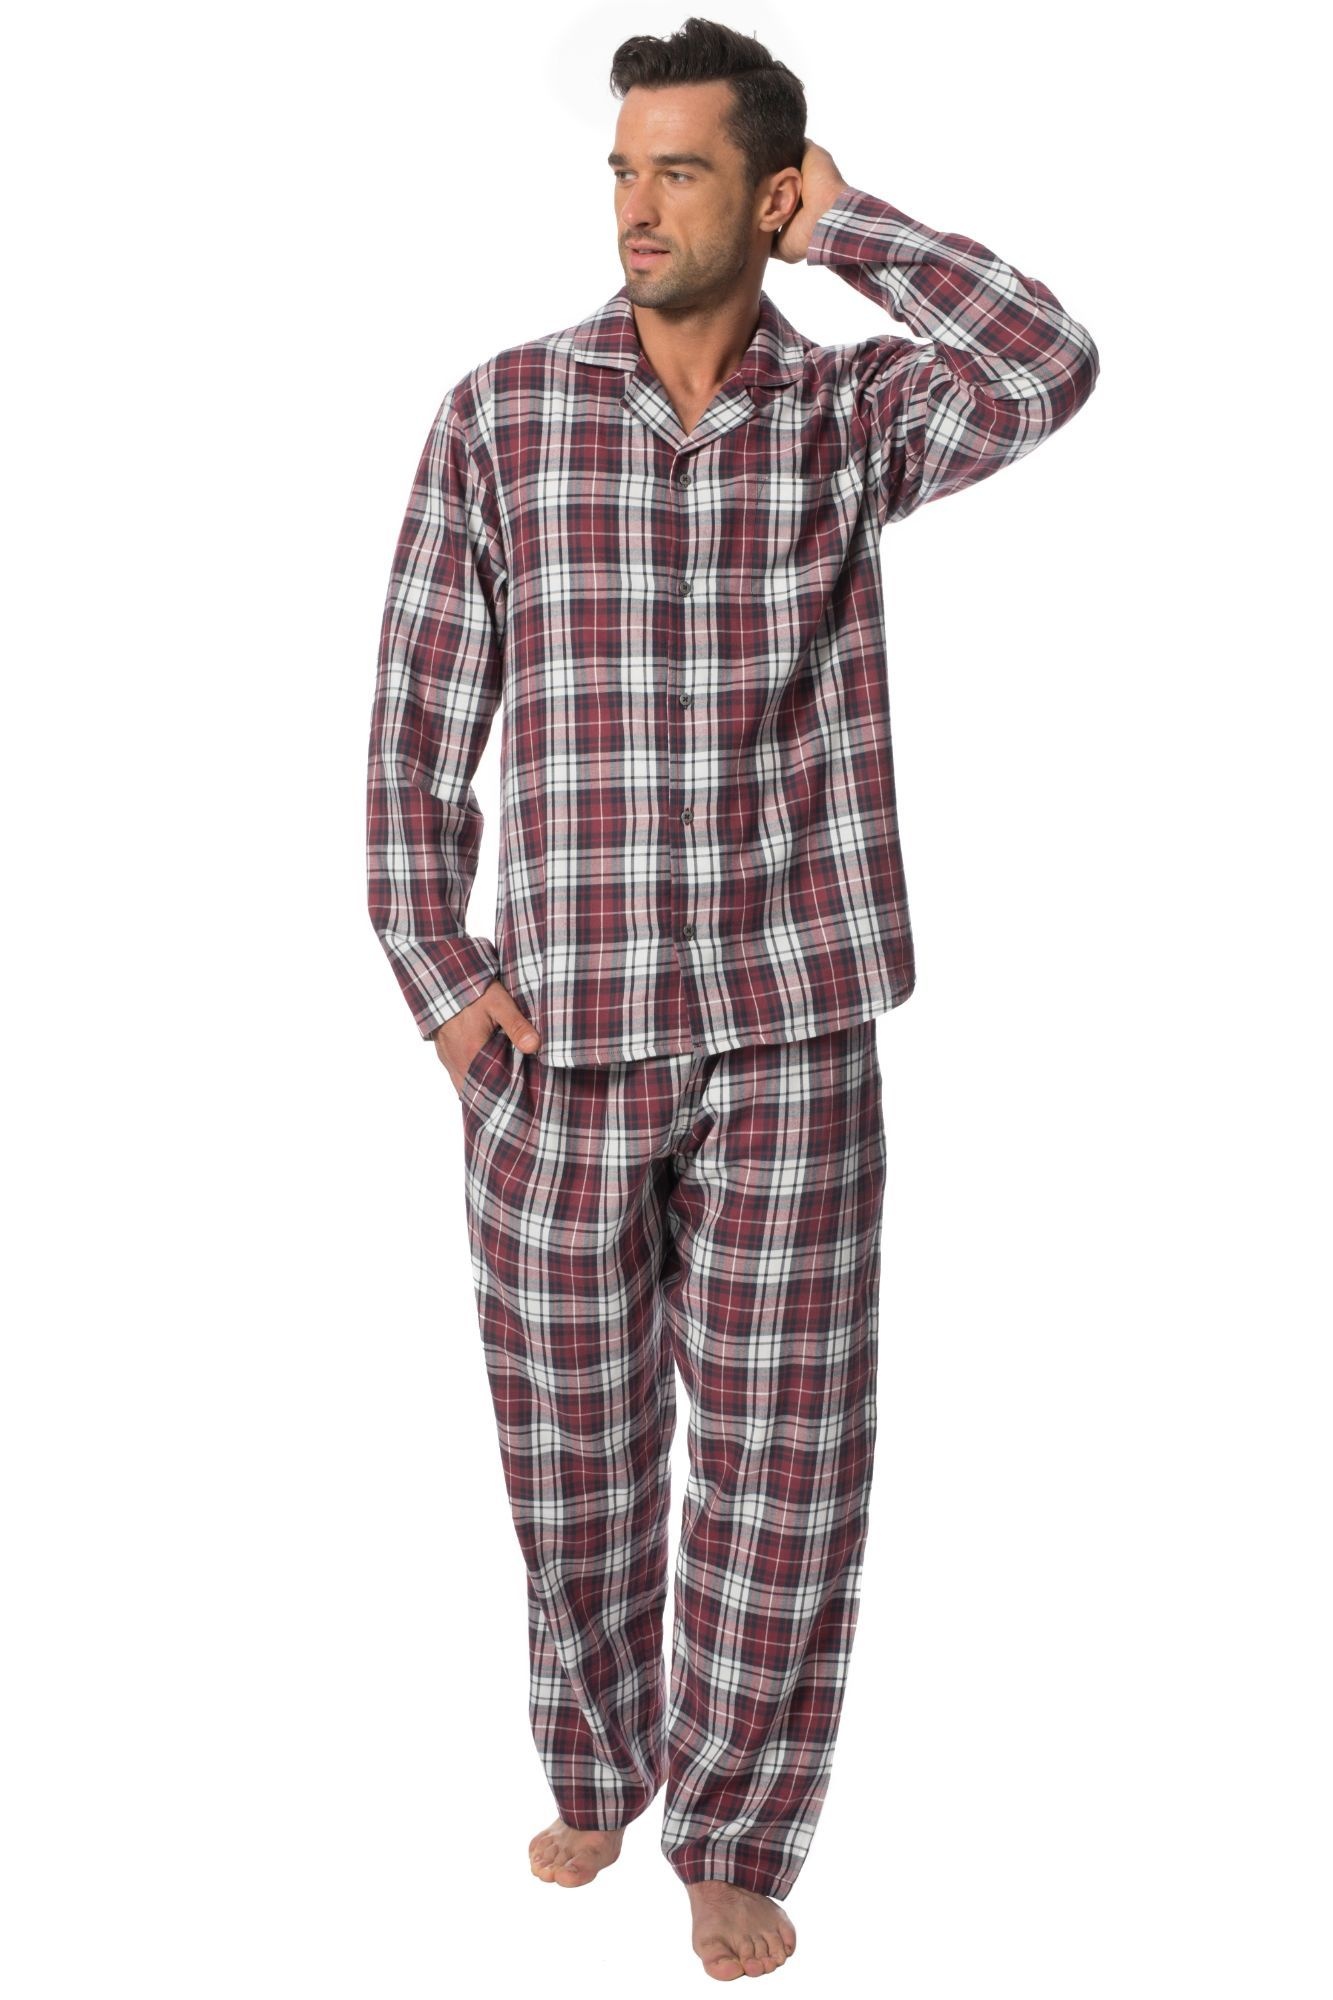 Пижамы мужские магазины. Фланелевая пижама мужская юникло. H@M мужская фланелевая пижама. Пижама Uniqlo мужская. Пижама мужская Кен, размер 56.